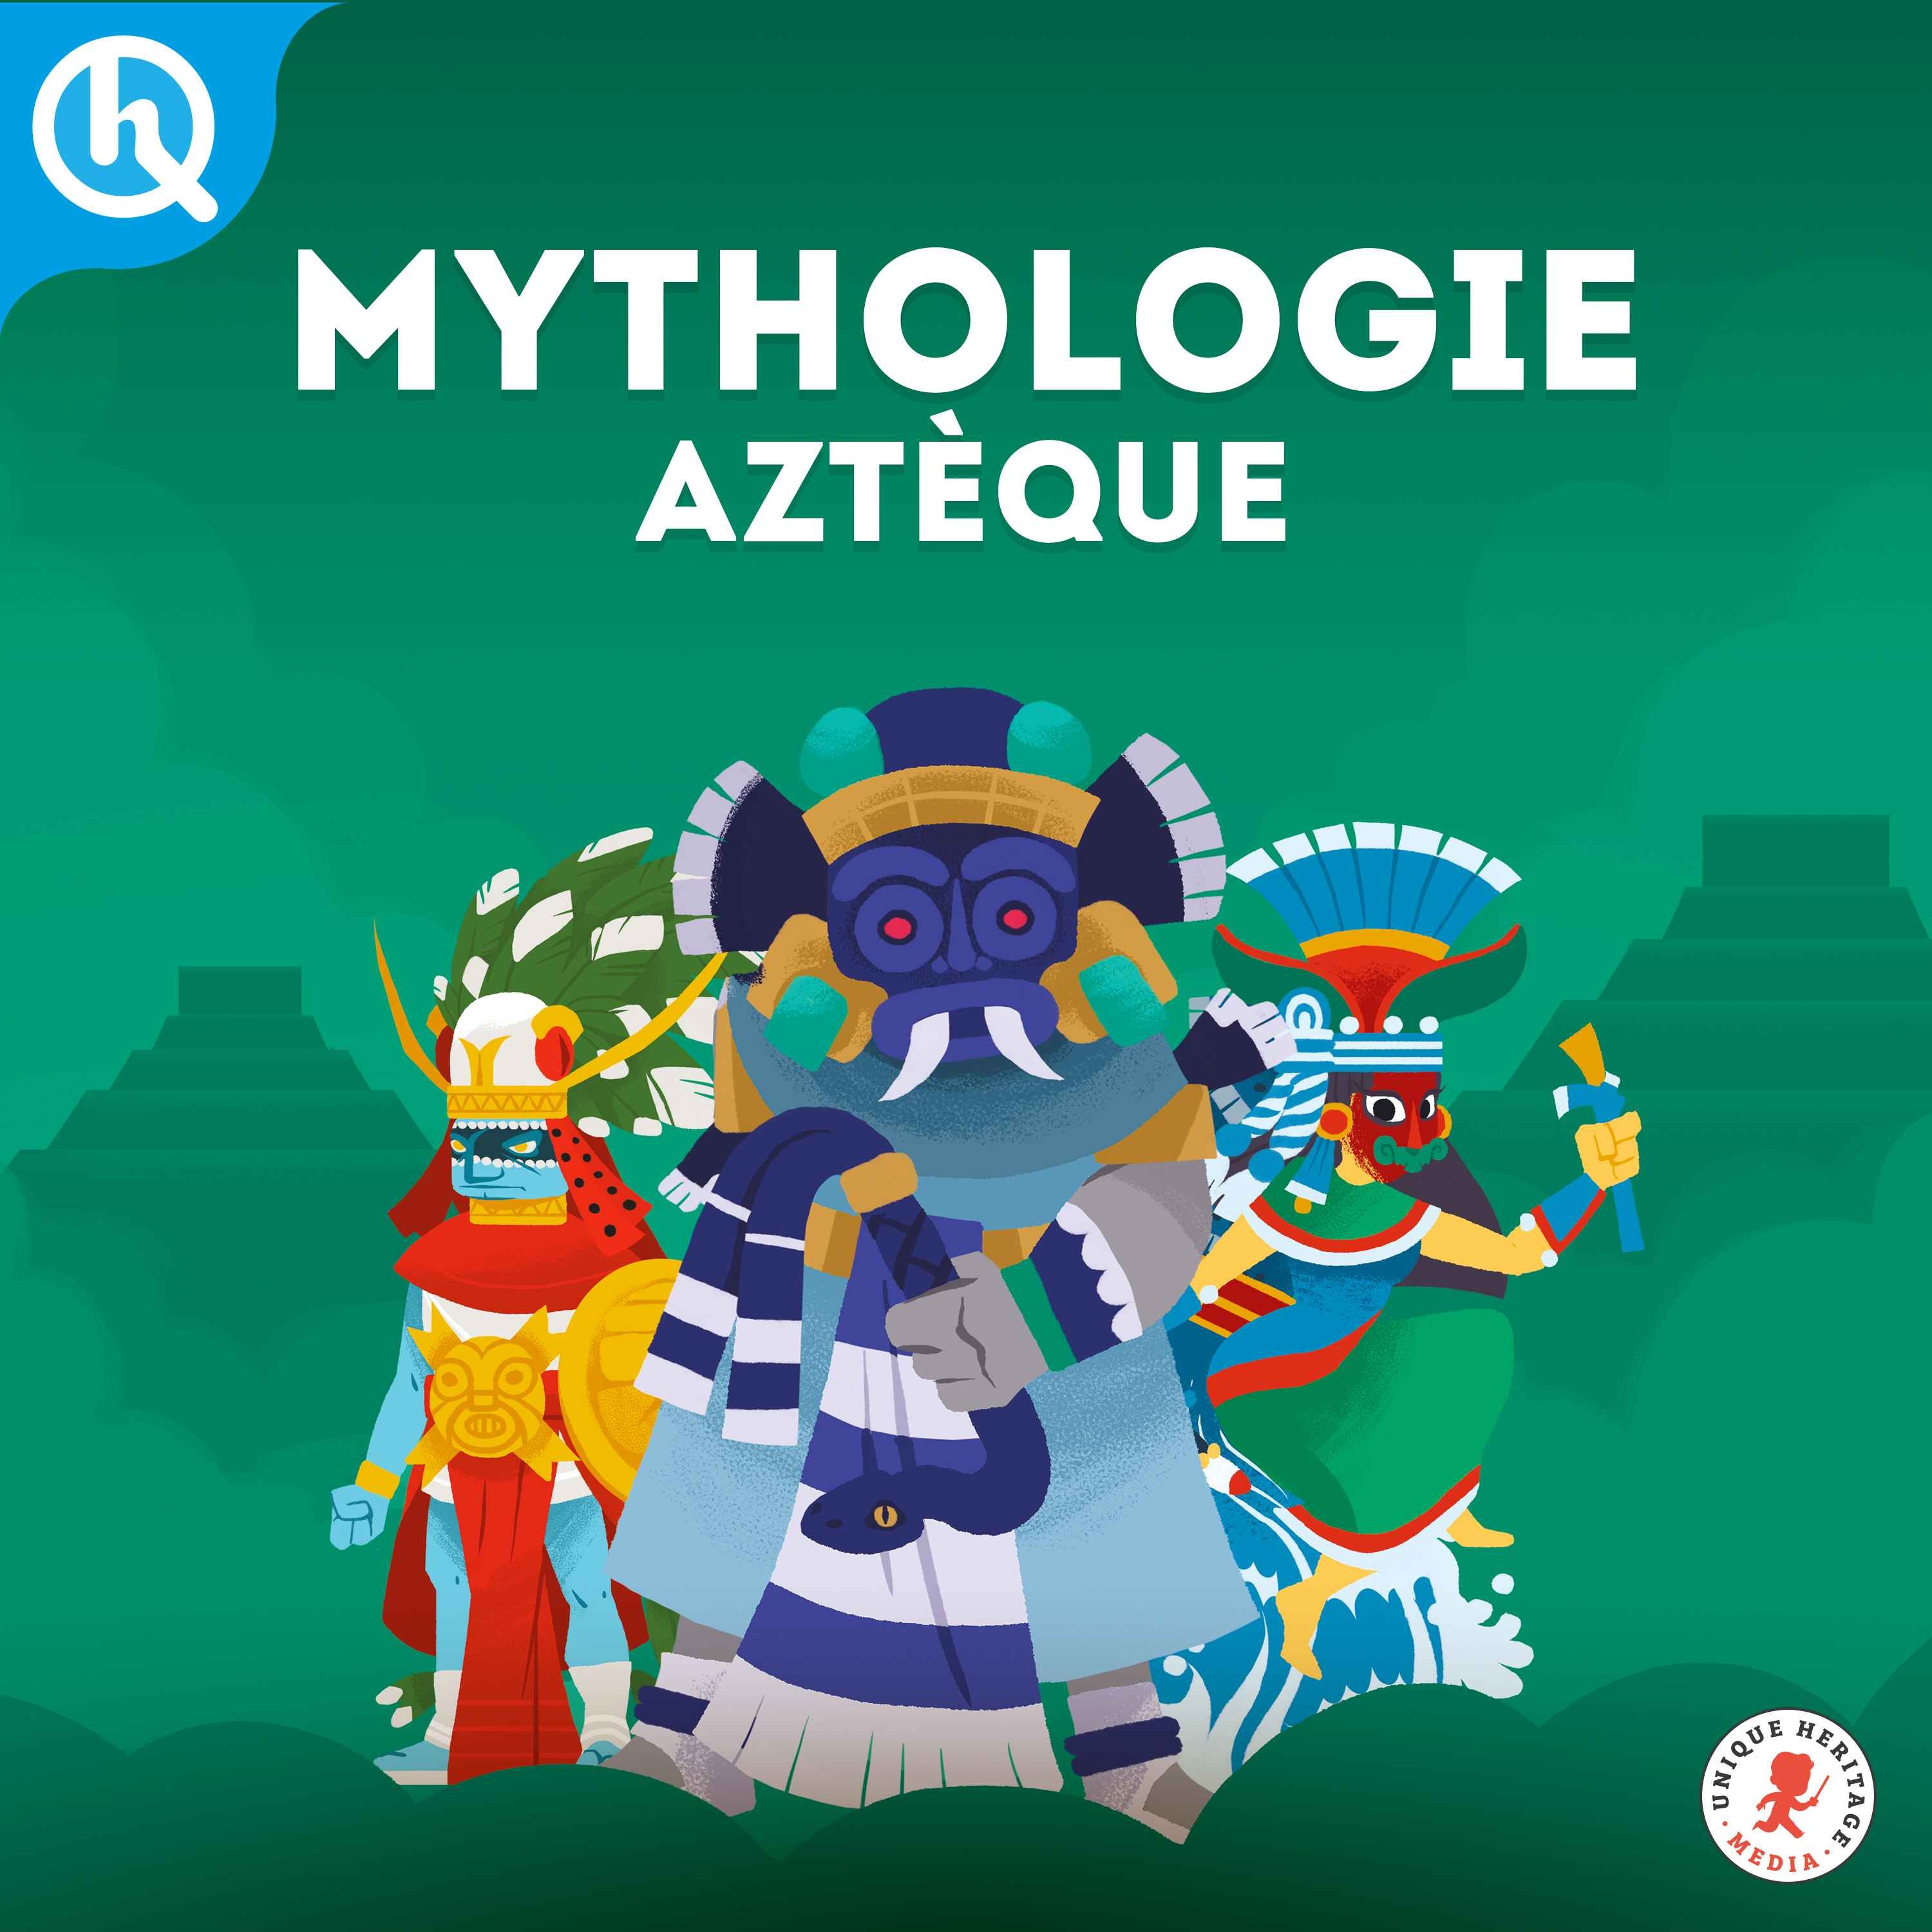 Mythologie aztèque